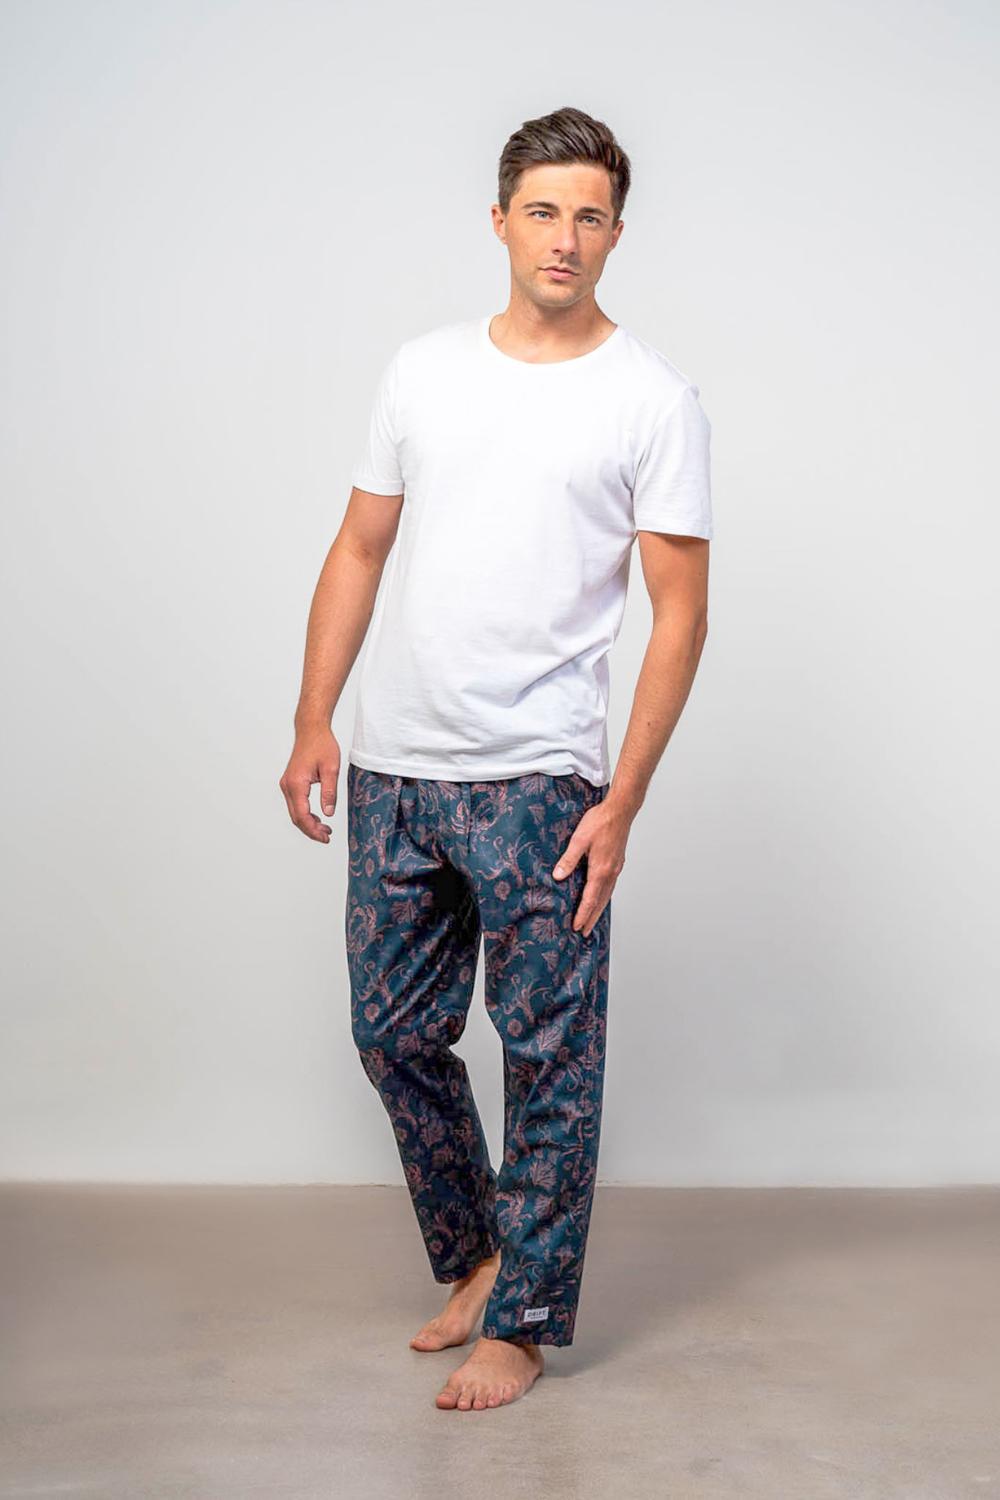 Model wearing long pajama bottoms for men